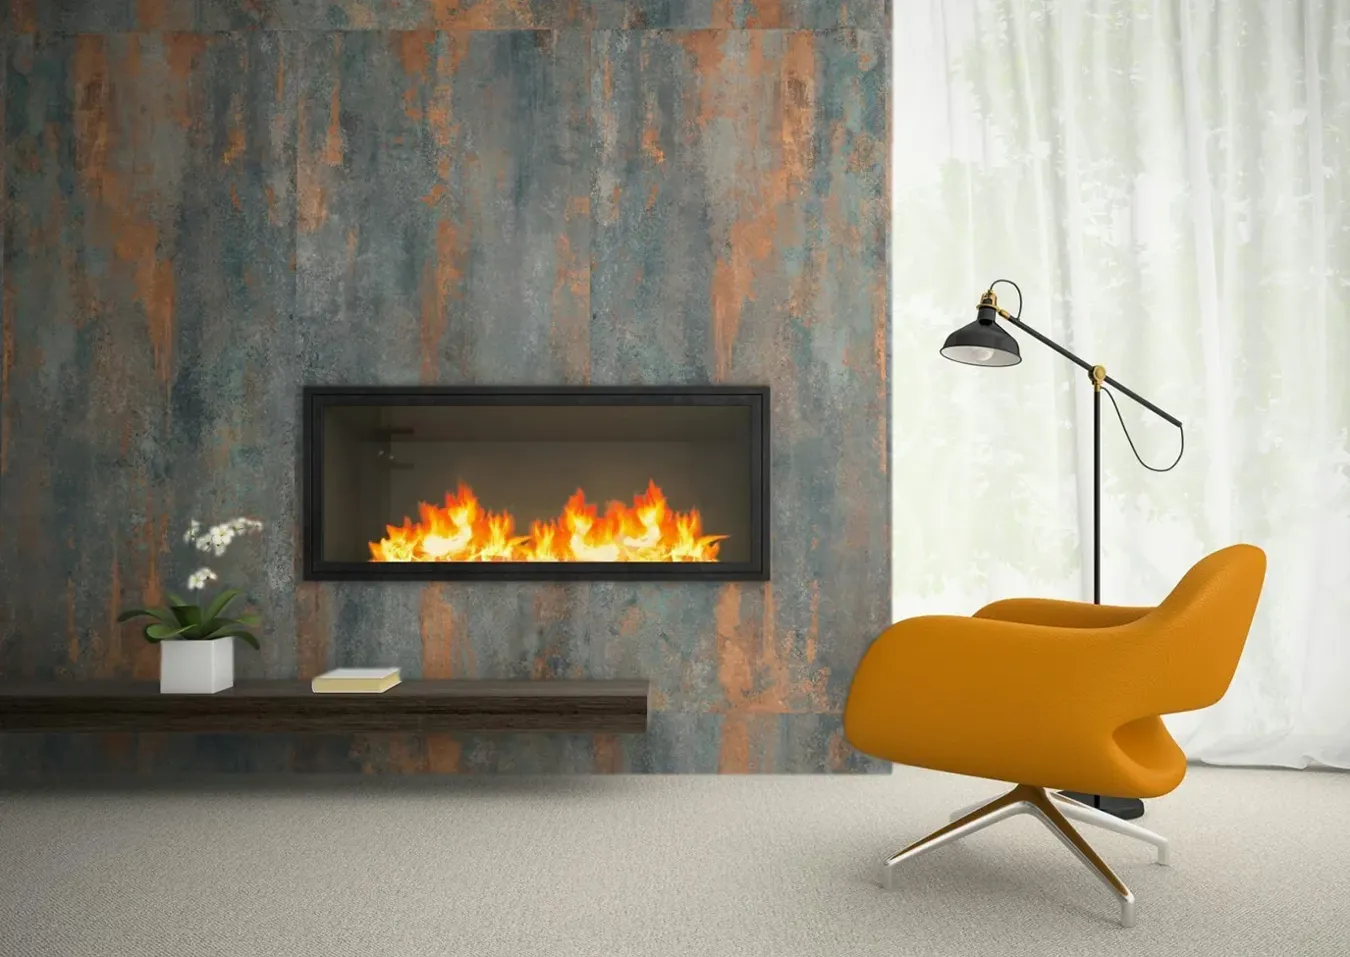 Sala de estar acogedora con chimenea de azulejos efecto metal Precious Gold, sillón amarillo moderno y lámpara de pie elegante